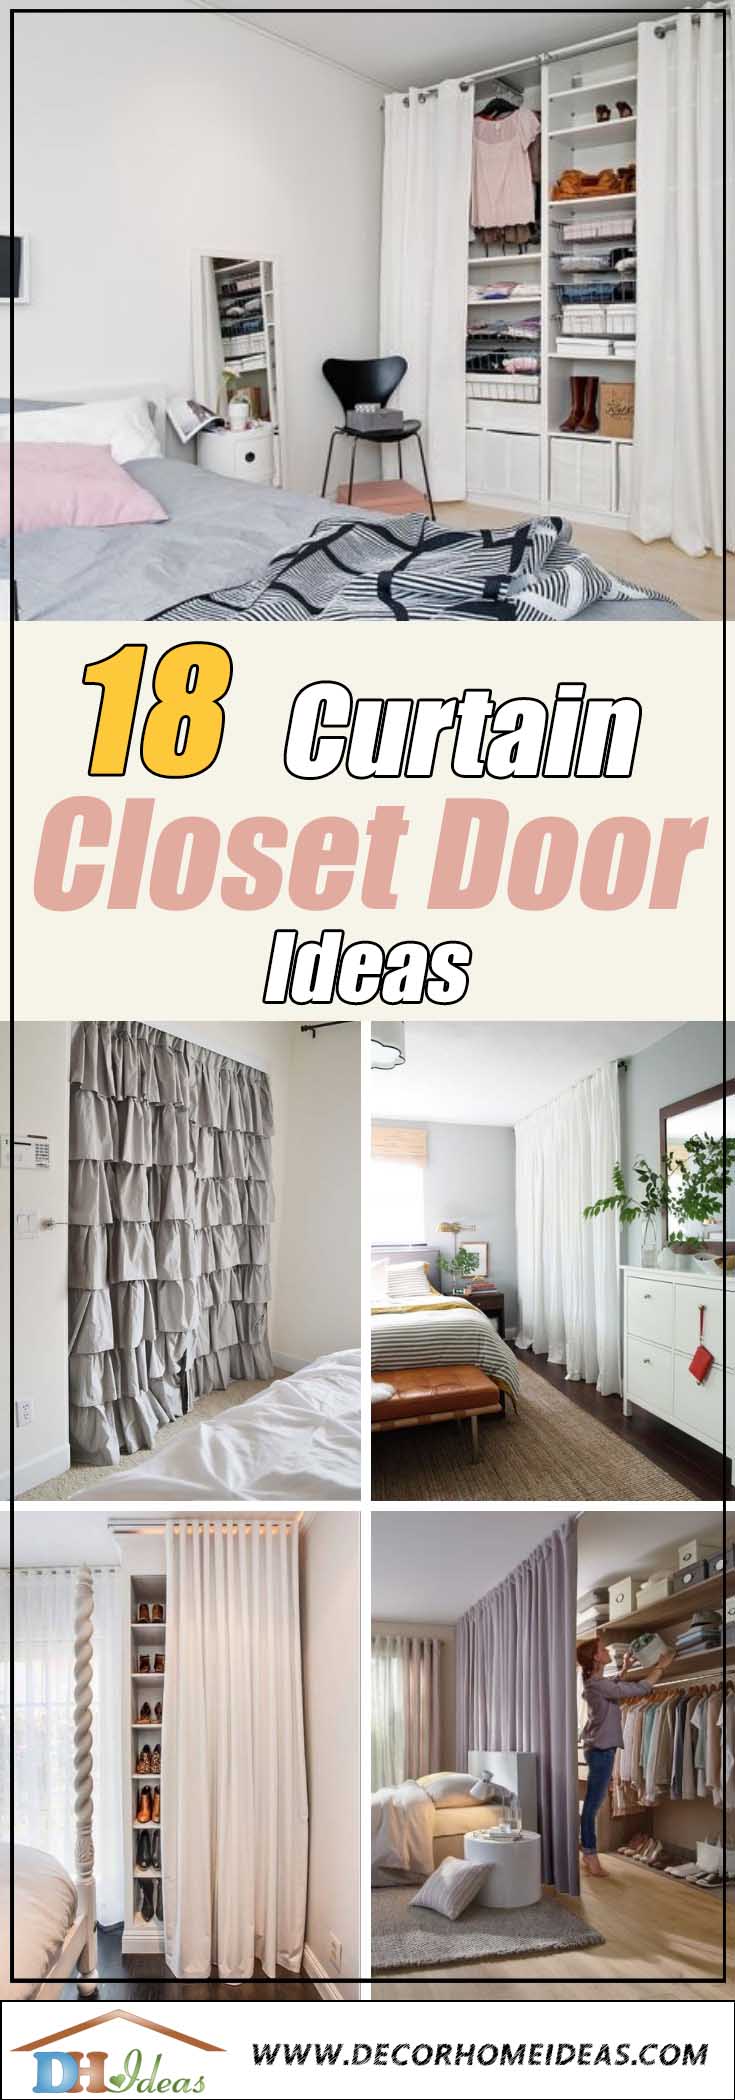 18 Tidy Curtain Closet Doors To Conquer, Shower Curtain Rod For Closet Door